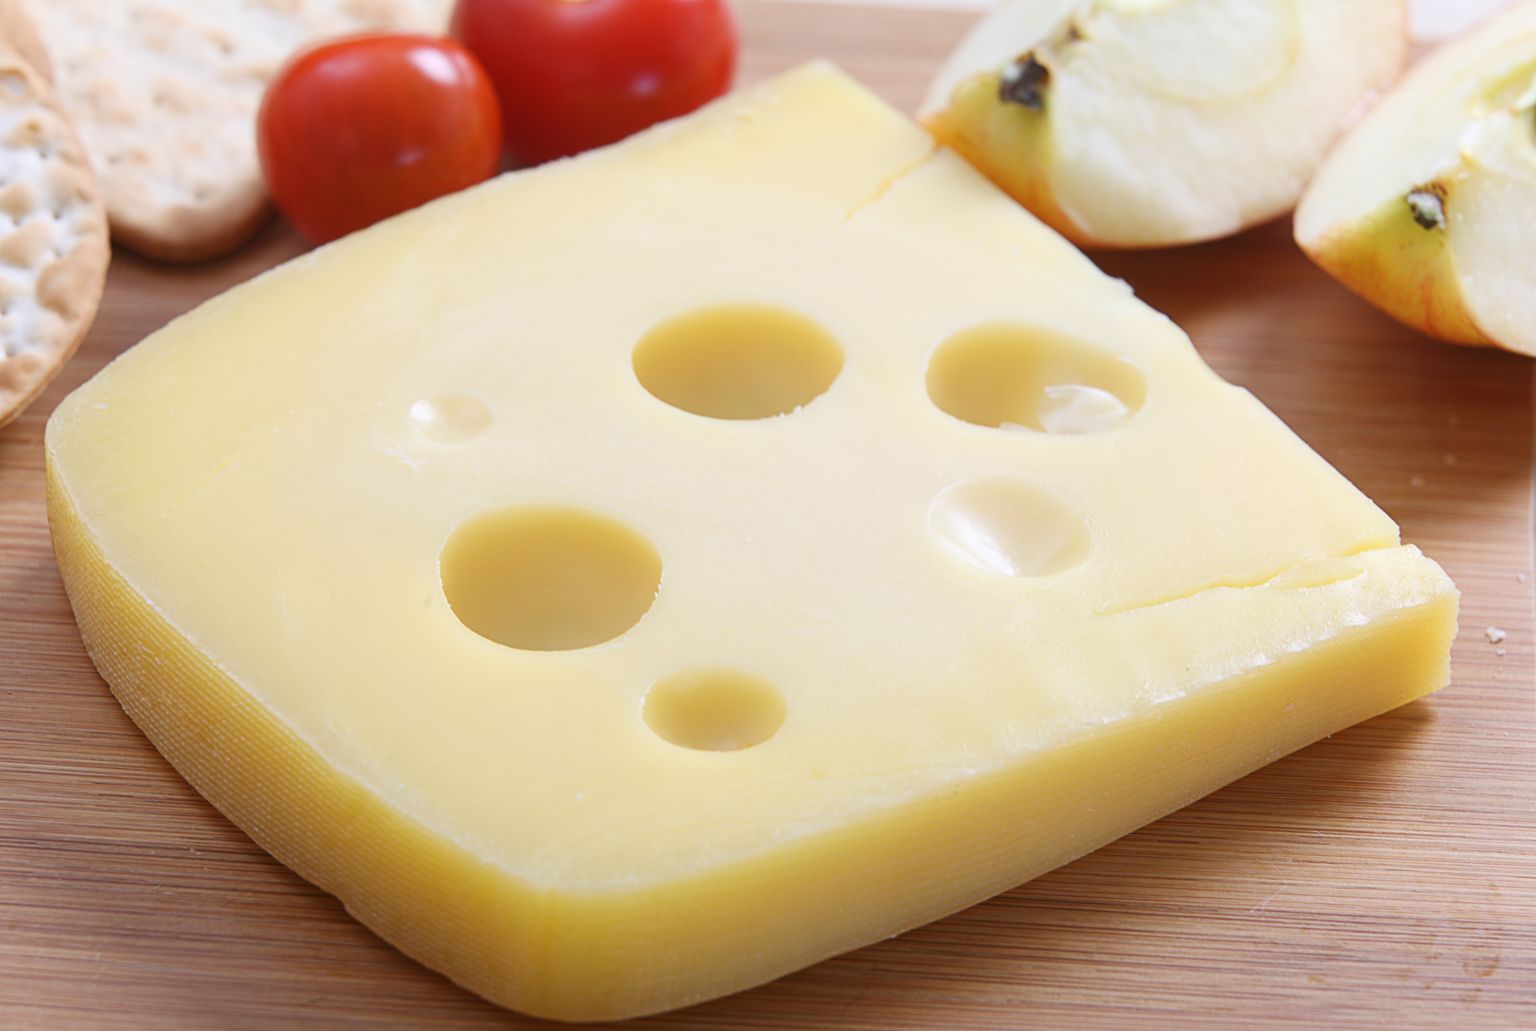 Jarlsbergi juust. Pilt on illustreeriv